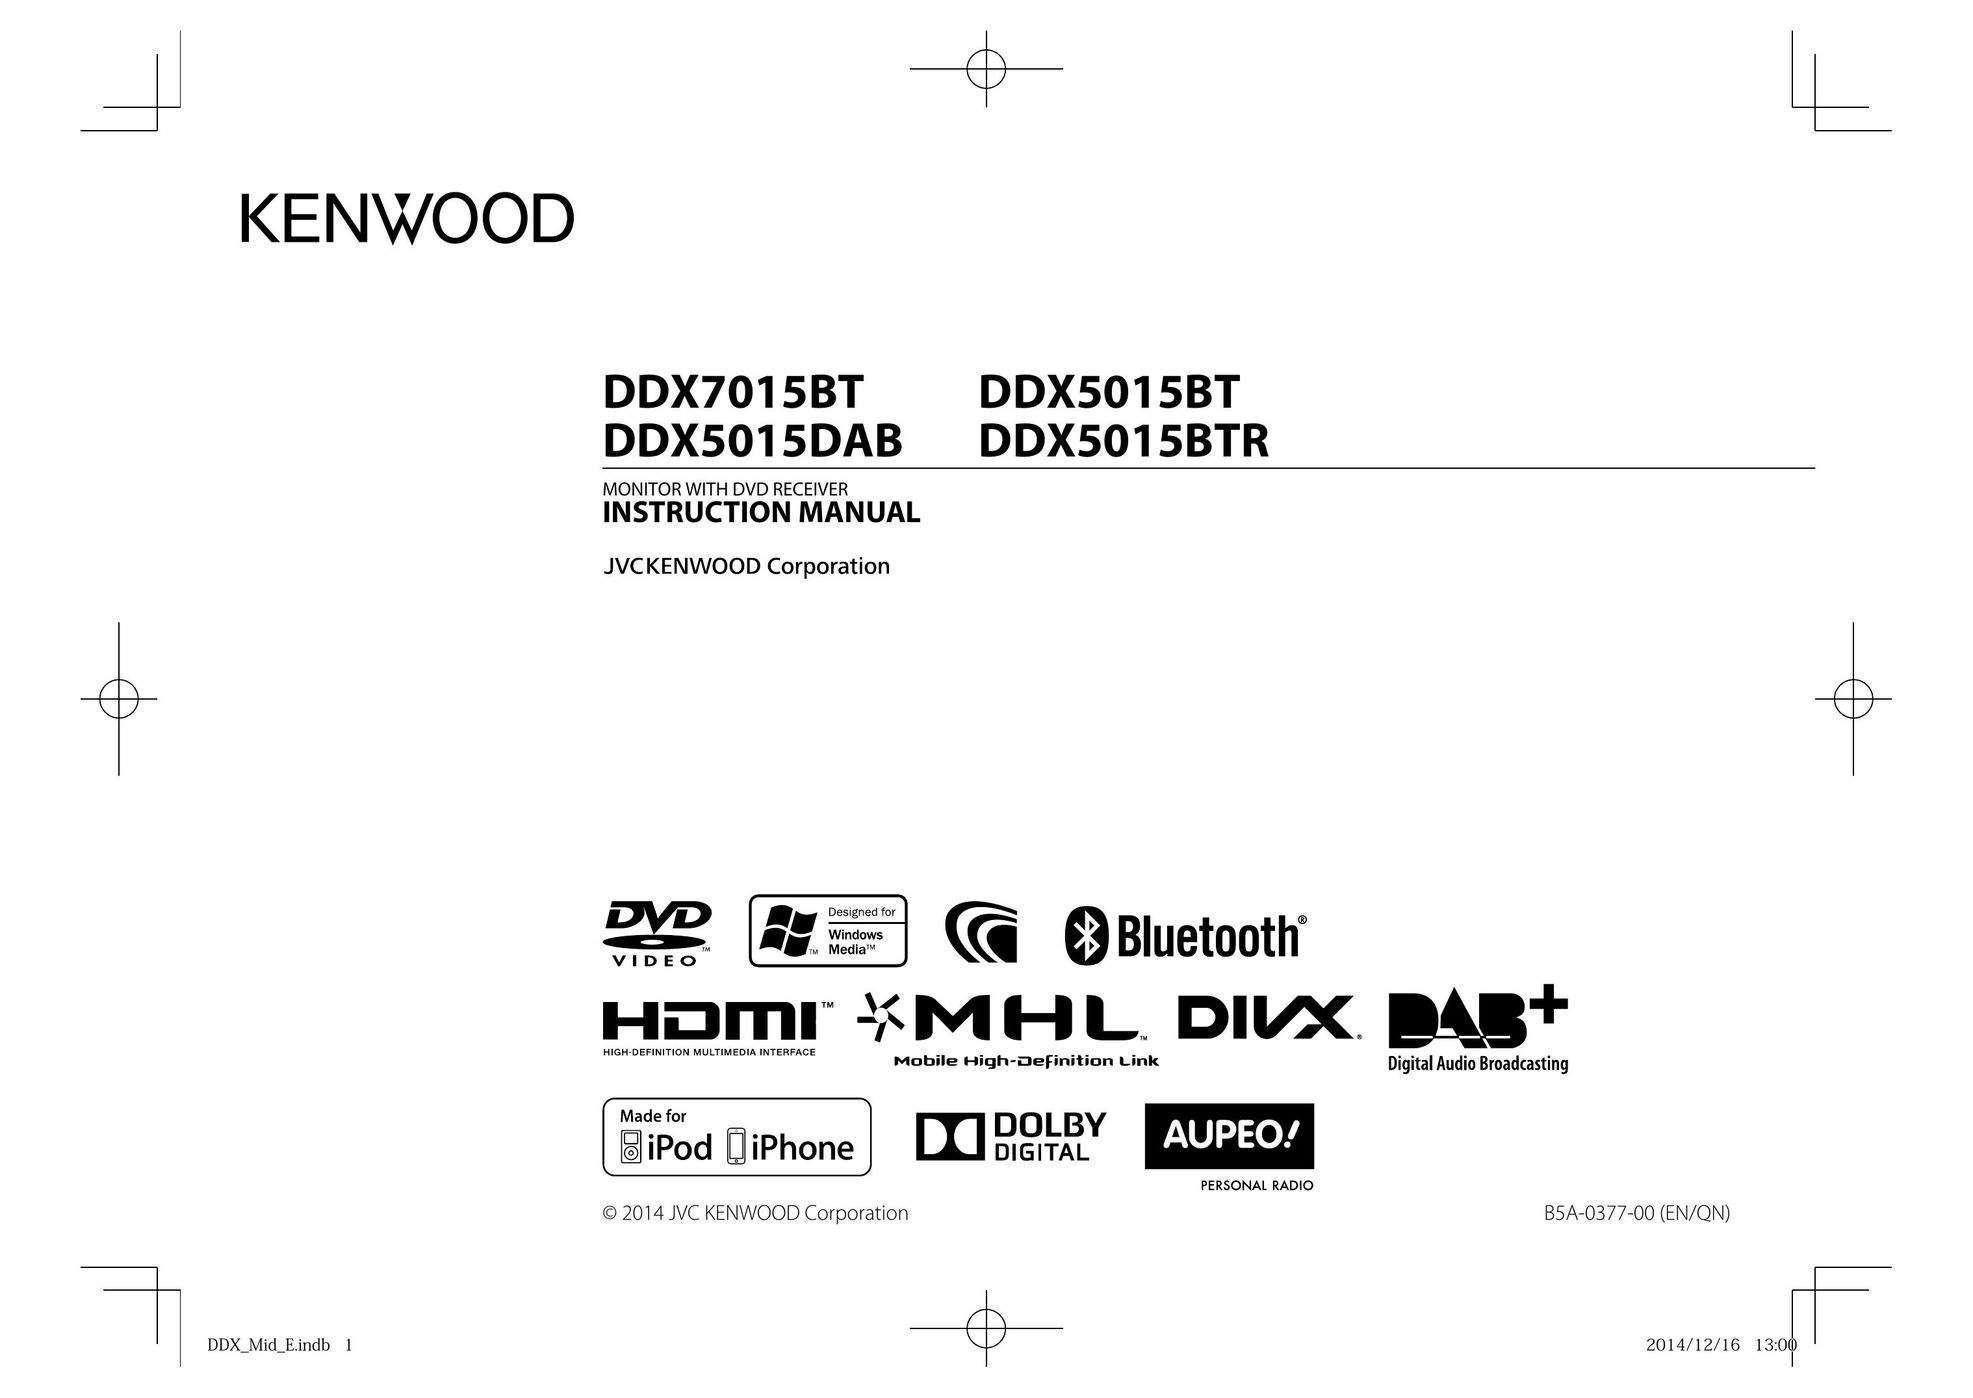 Kenwood DDX7015BT Car Video System User Manual